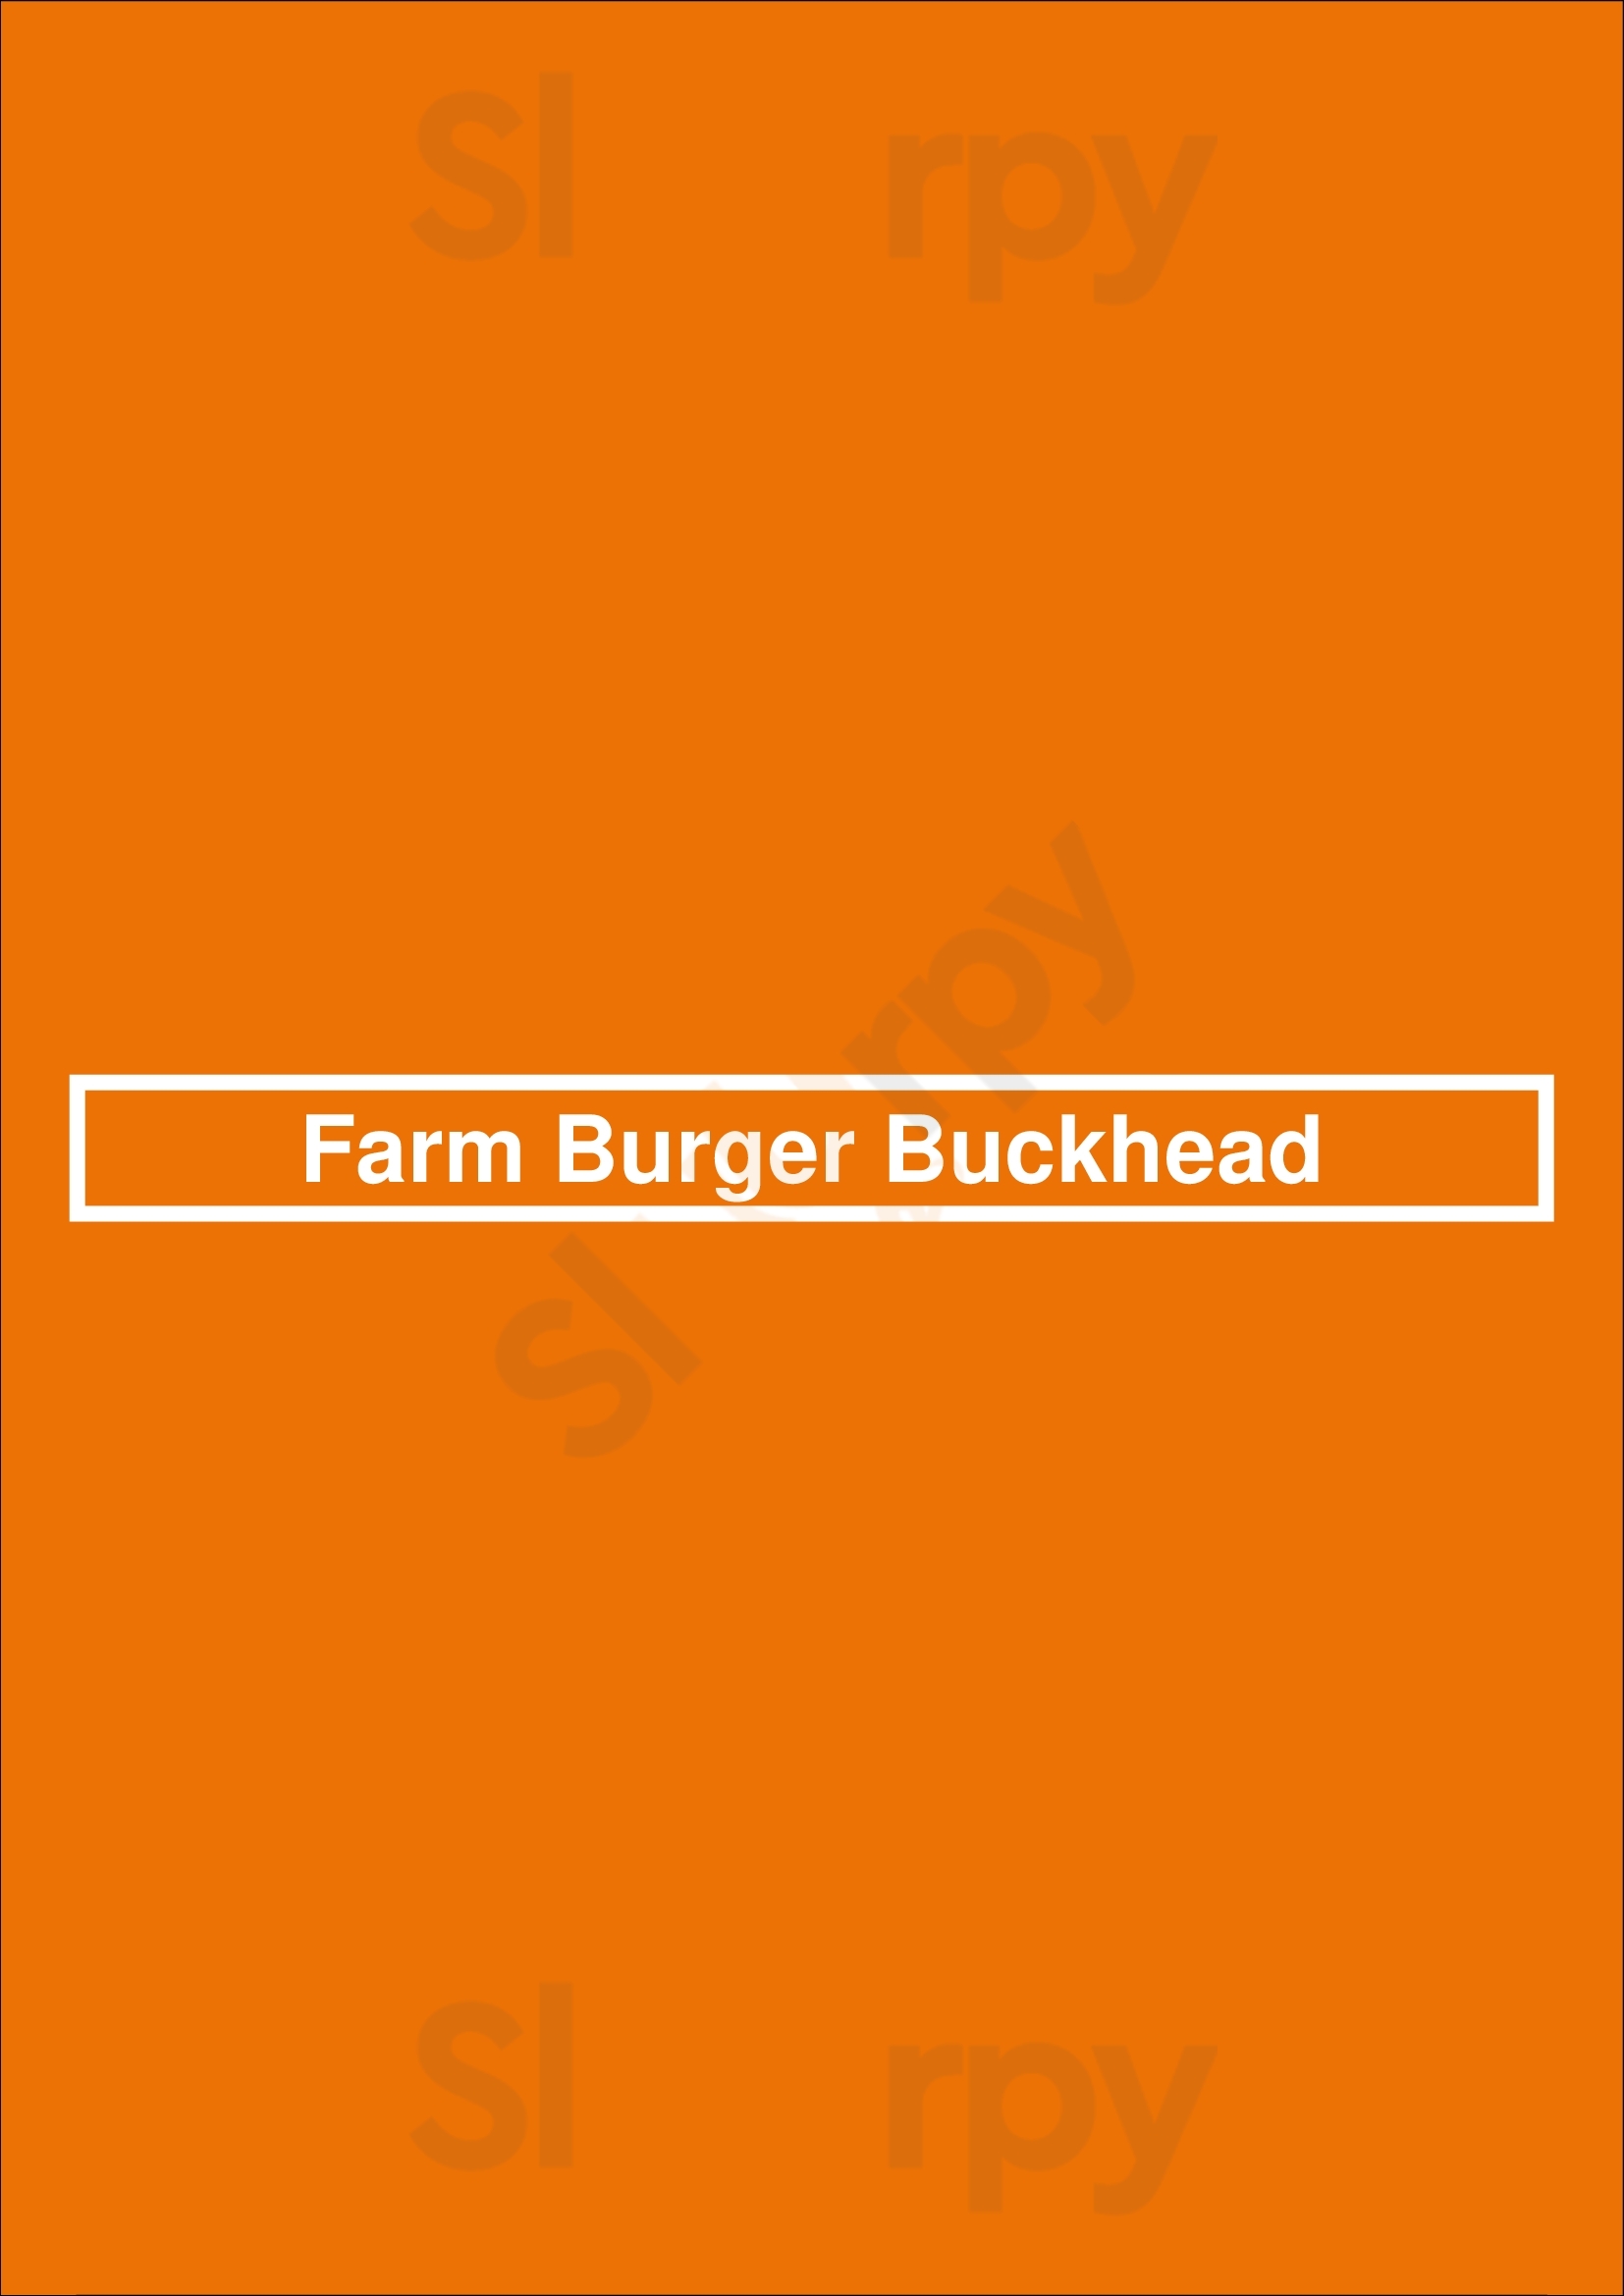 Farm Burger Buckhead Atlanta Menu - 1